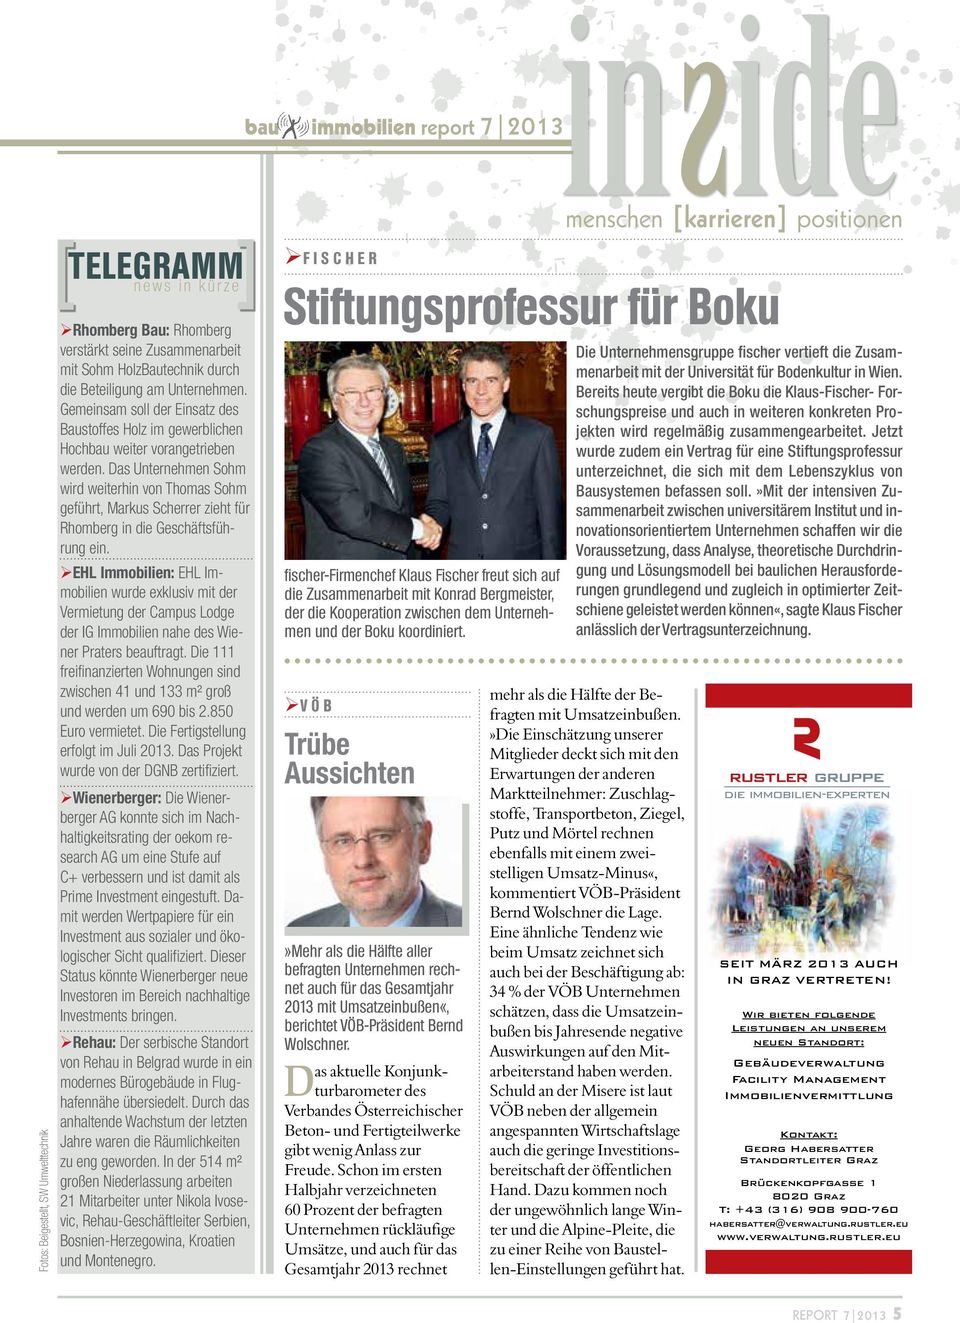 Das Unternehmen Sohm wird weiterhin von Thomas Sohm geführt, Markus Scherrer zieht für Rhomberg in die Geschäftsführung ein.